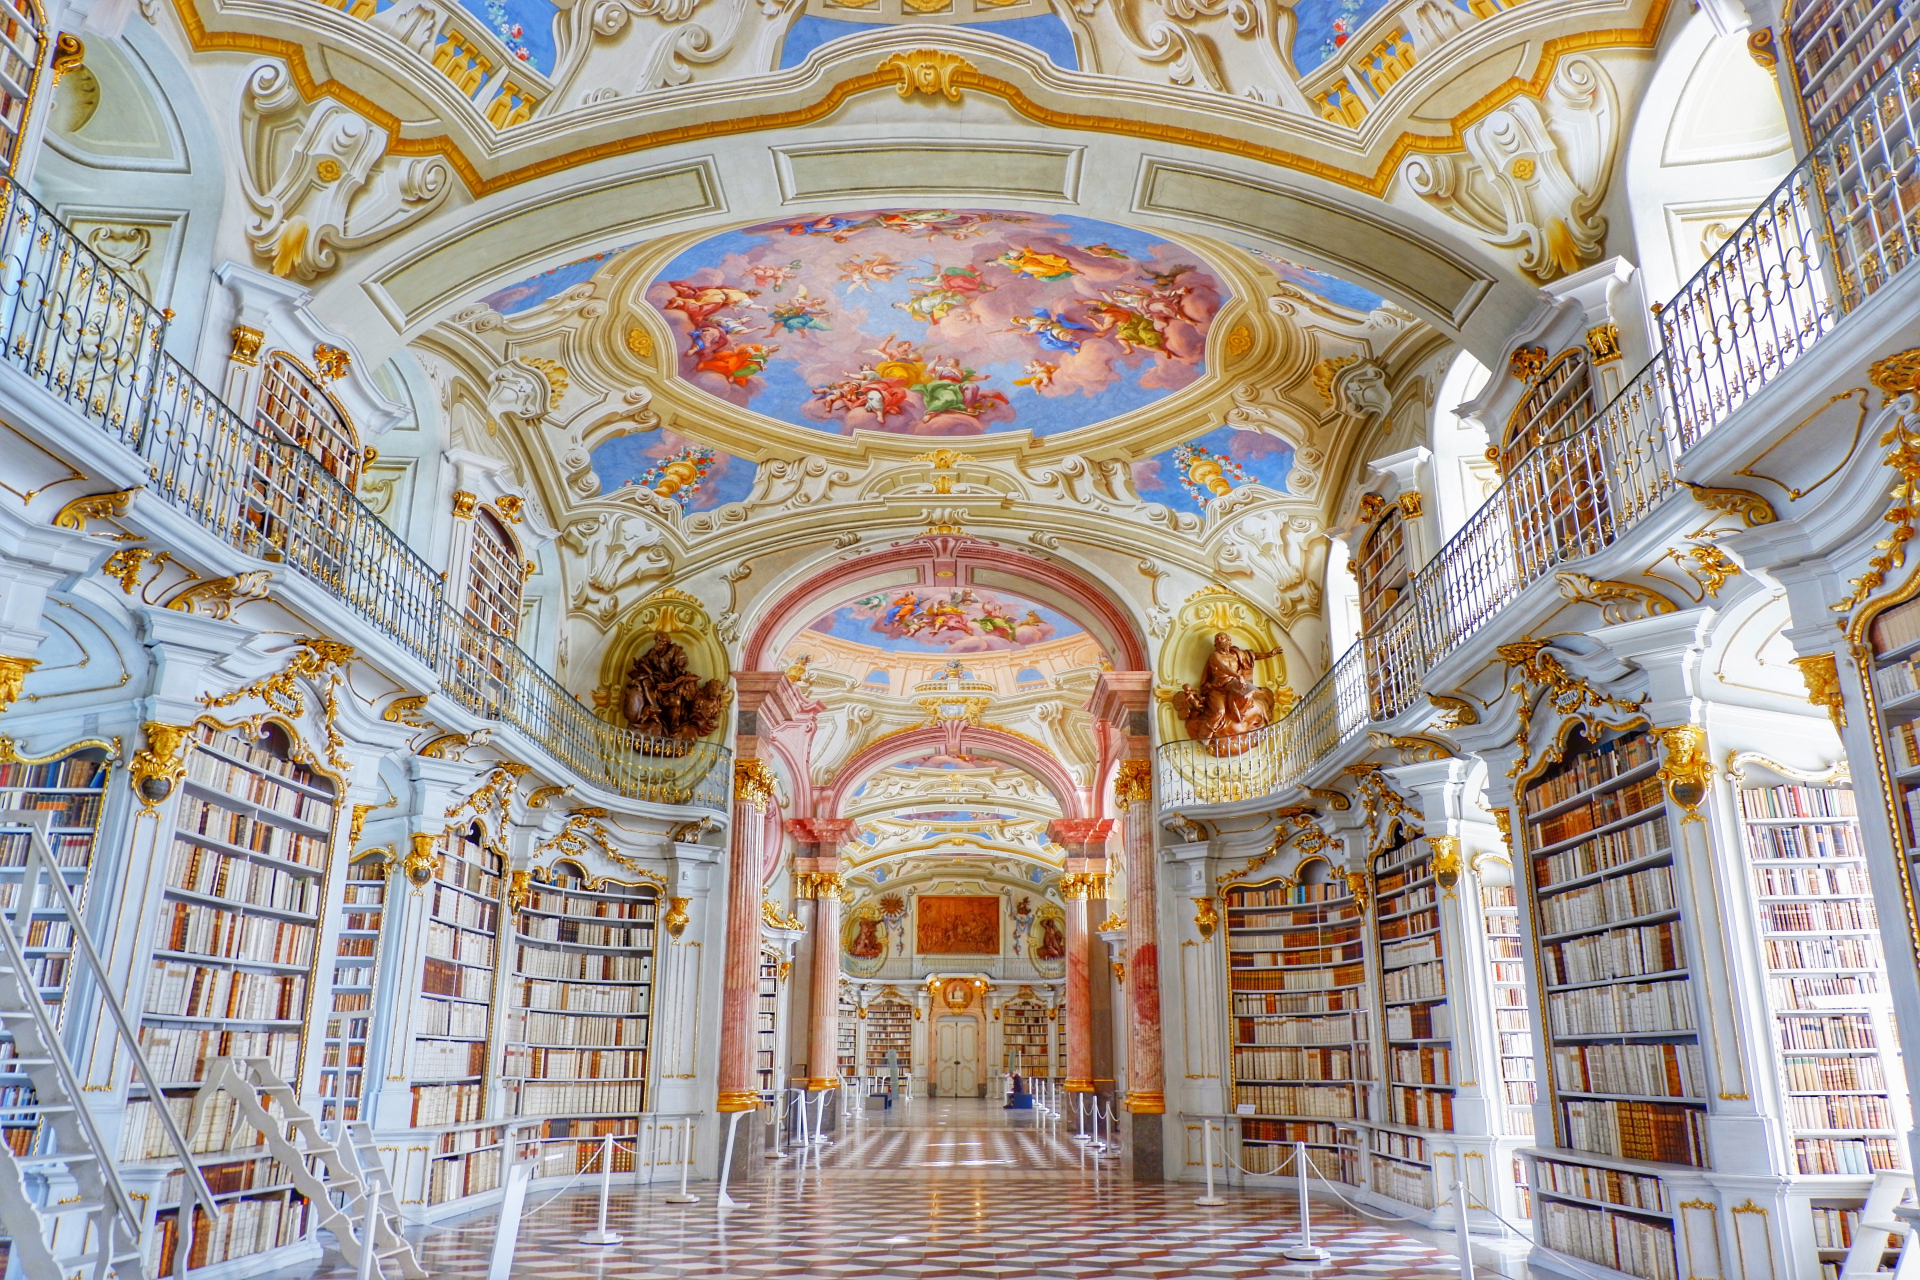 Хората ахват като влязат! Това е най-красивата библиотека в света